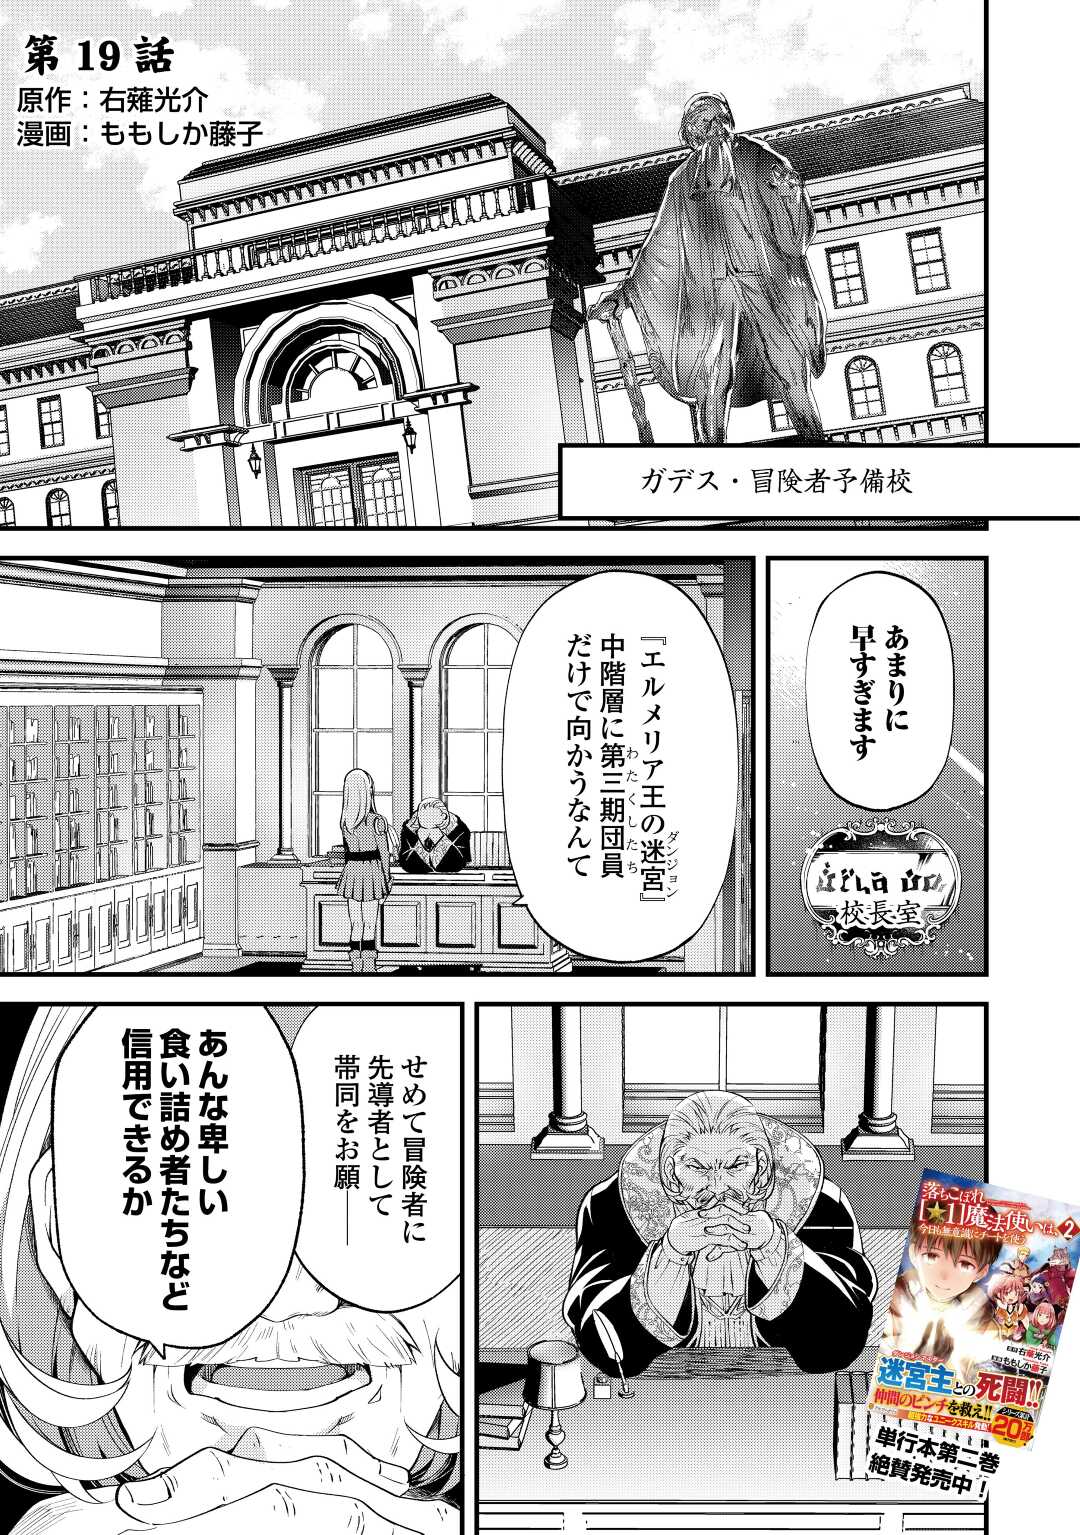 Ochikobore 1 Mahou Tsukai wa, Kyou mo Muishiki ni Cheat o Tsukau - Chapter 19 - Page 1